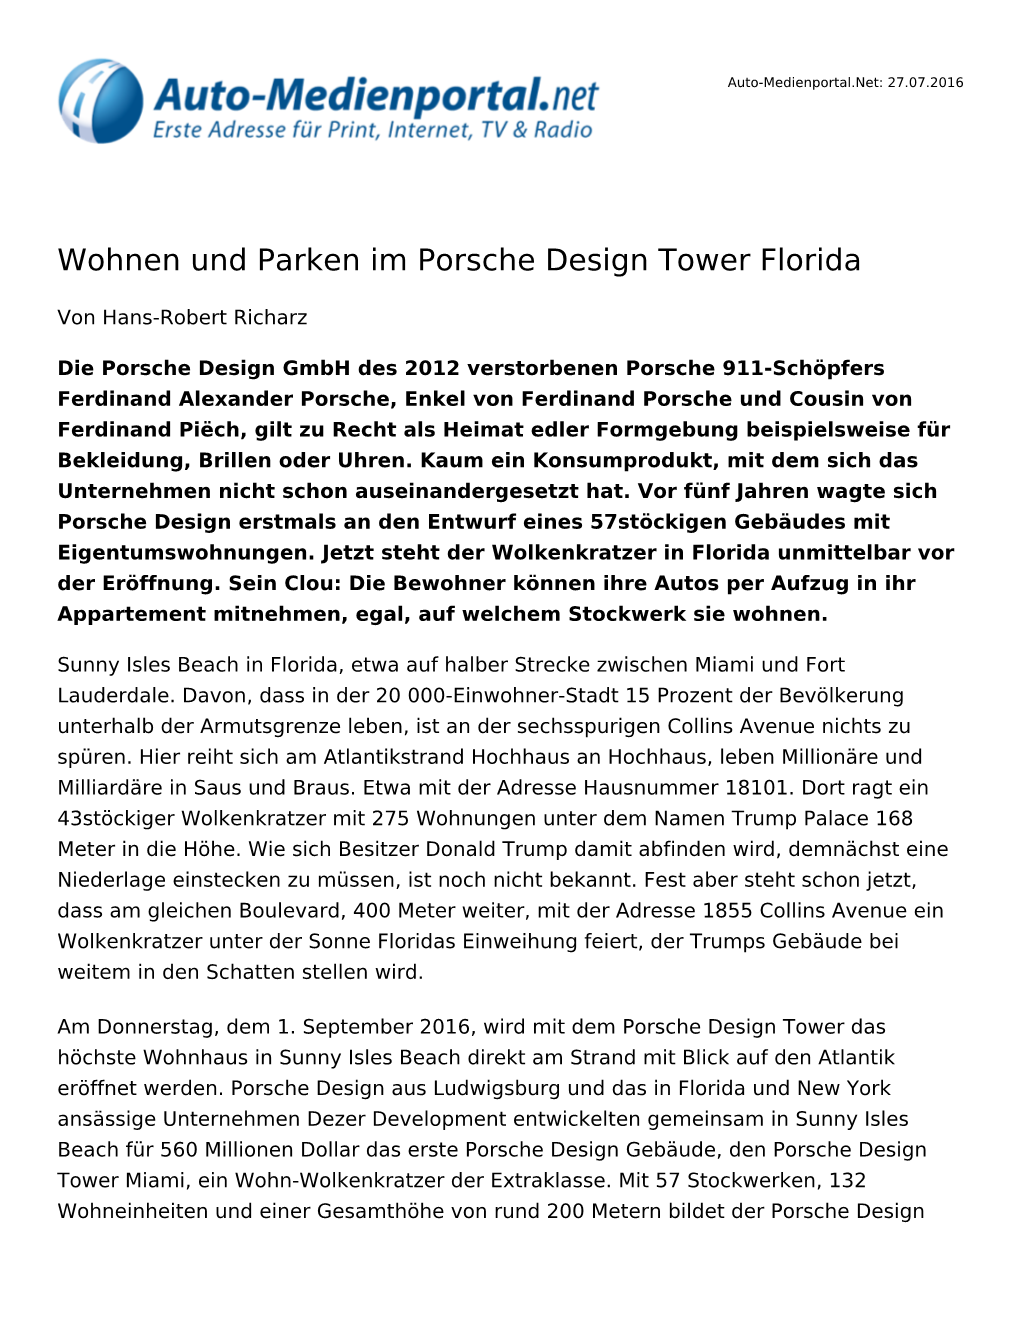 Wohnen Und Parken Im Porsche Design Tower Florida